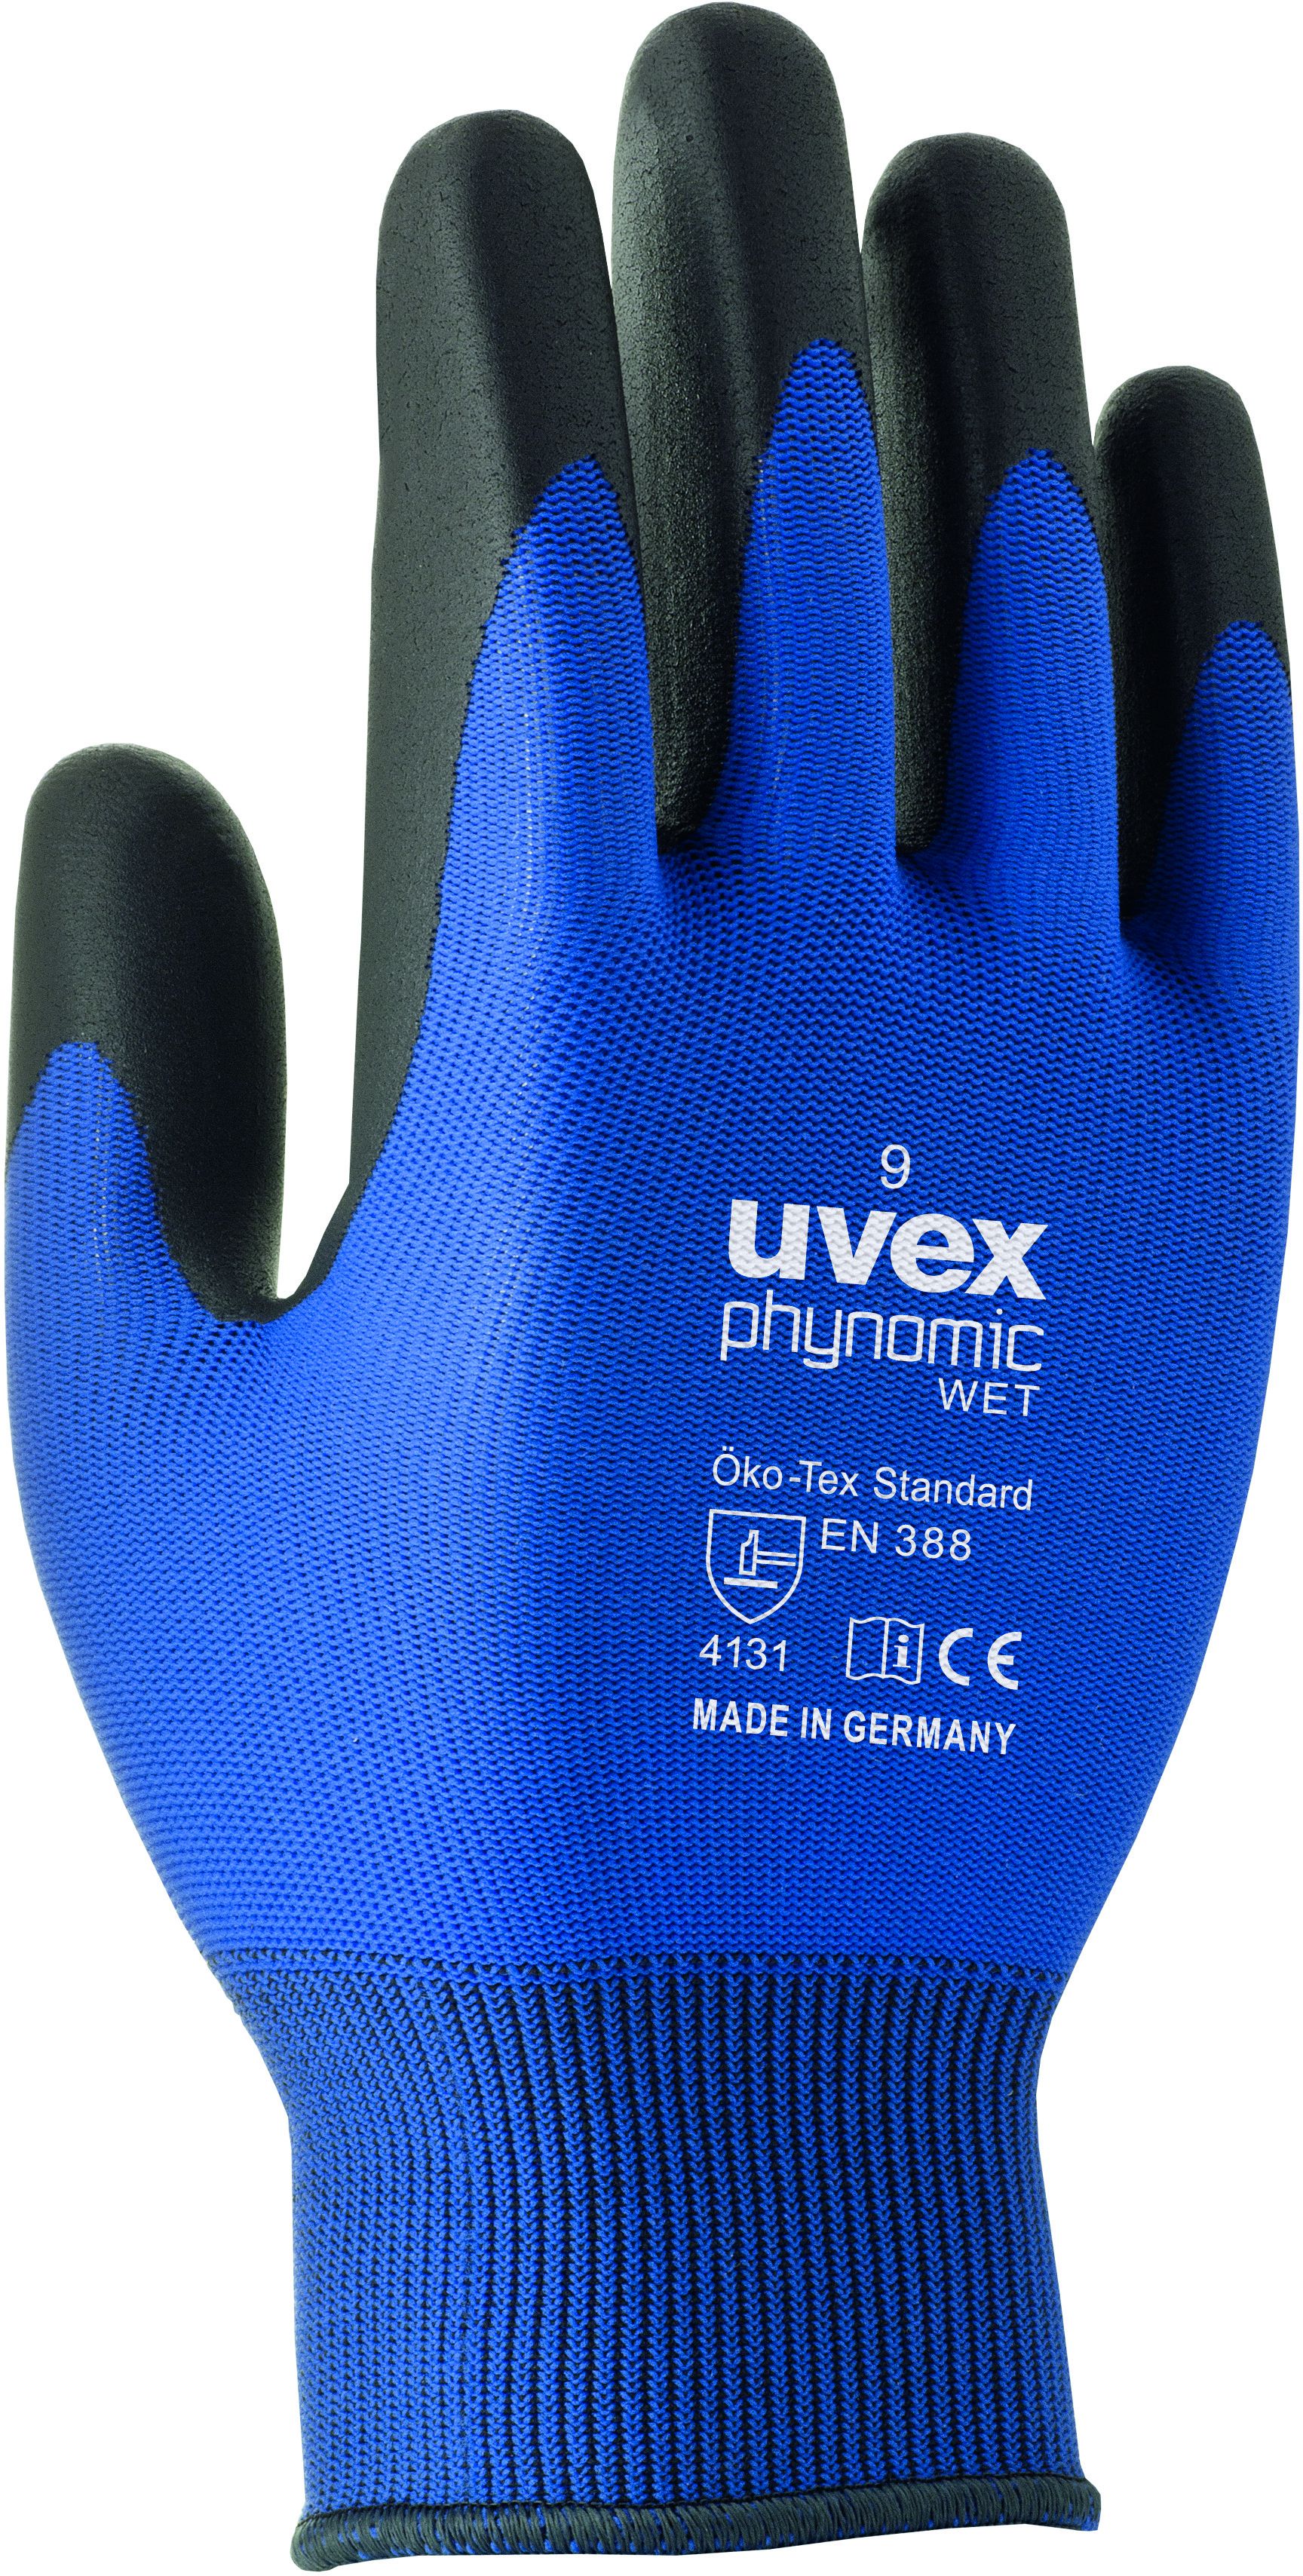 UVEX Arbeitshandschuh phynomic WET Gr. 10, blau/anthrazit, Art. 60060 - Arbeitsschutz